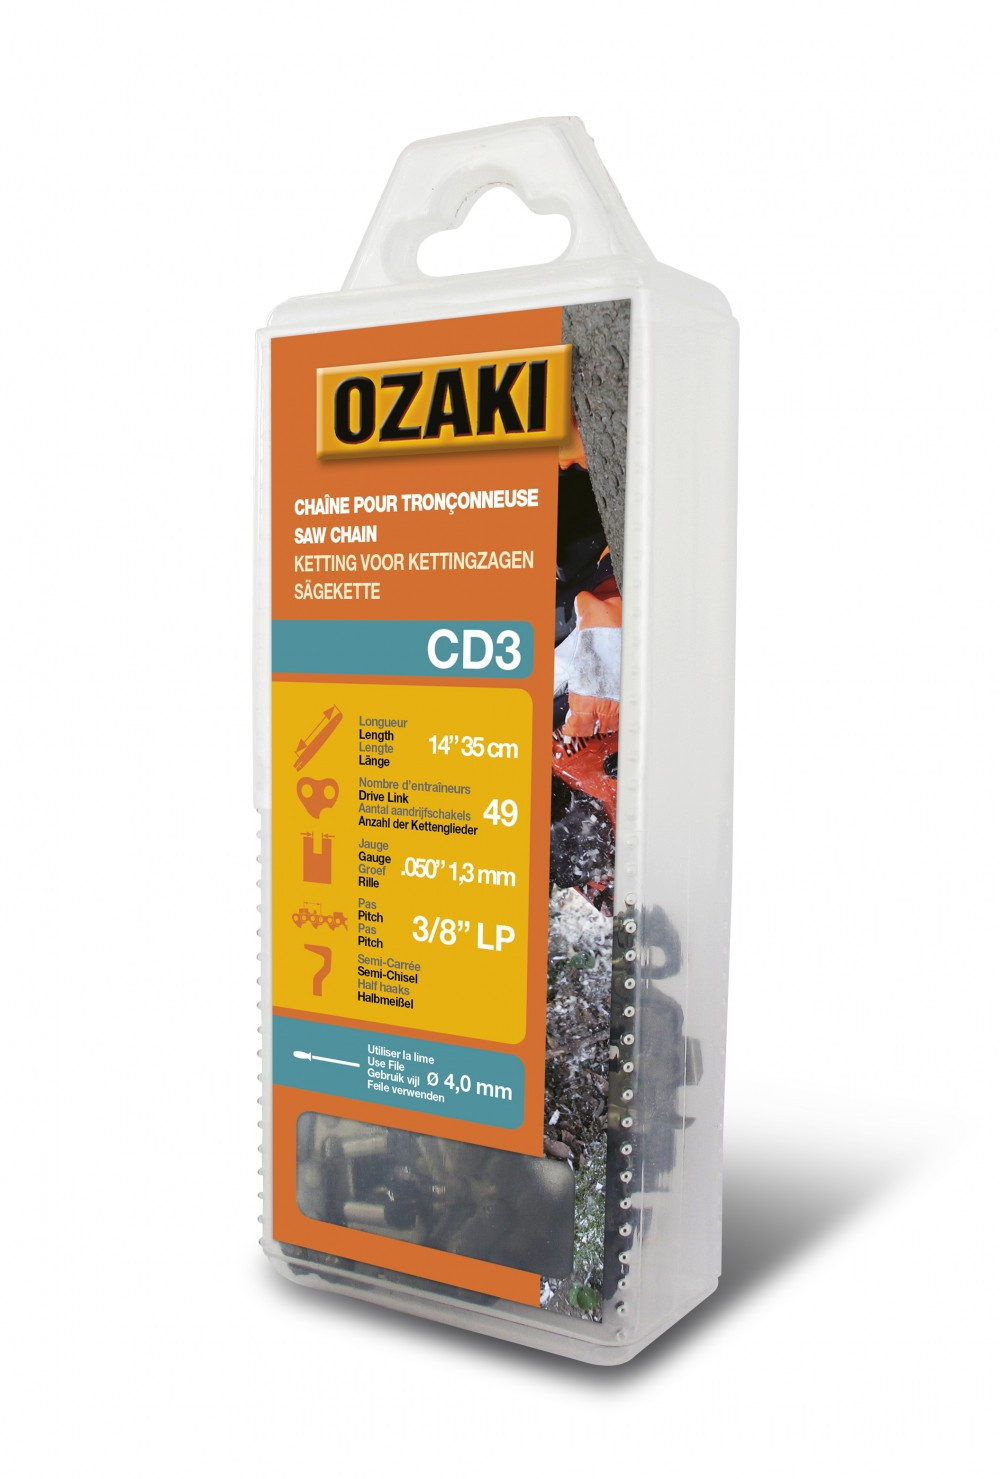 Chaîne de tronçonneuse OZAKI semi carrée: .3/8"LP .050 (1,3mm) 49 entraîneurs